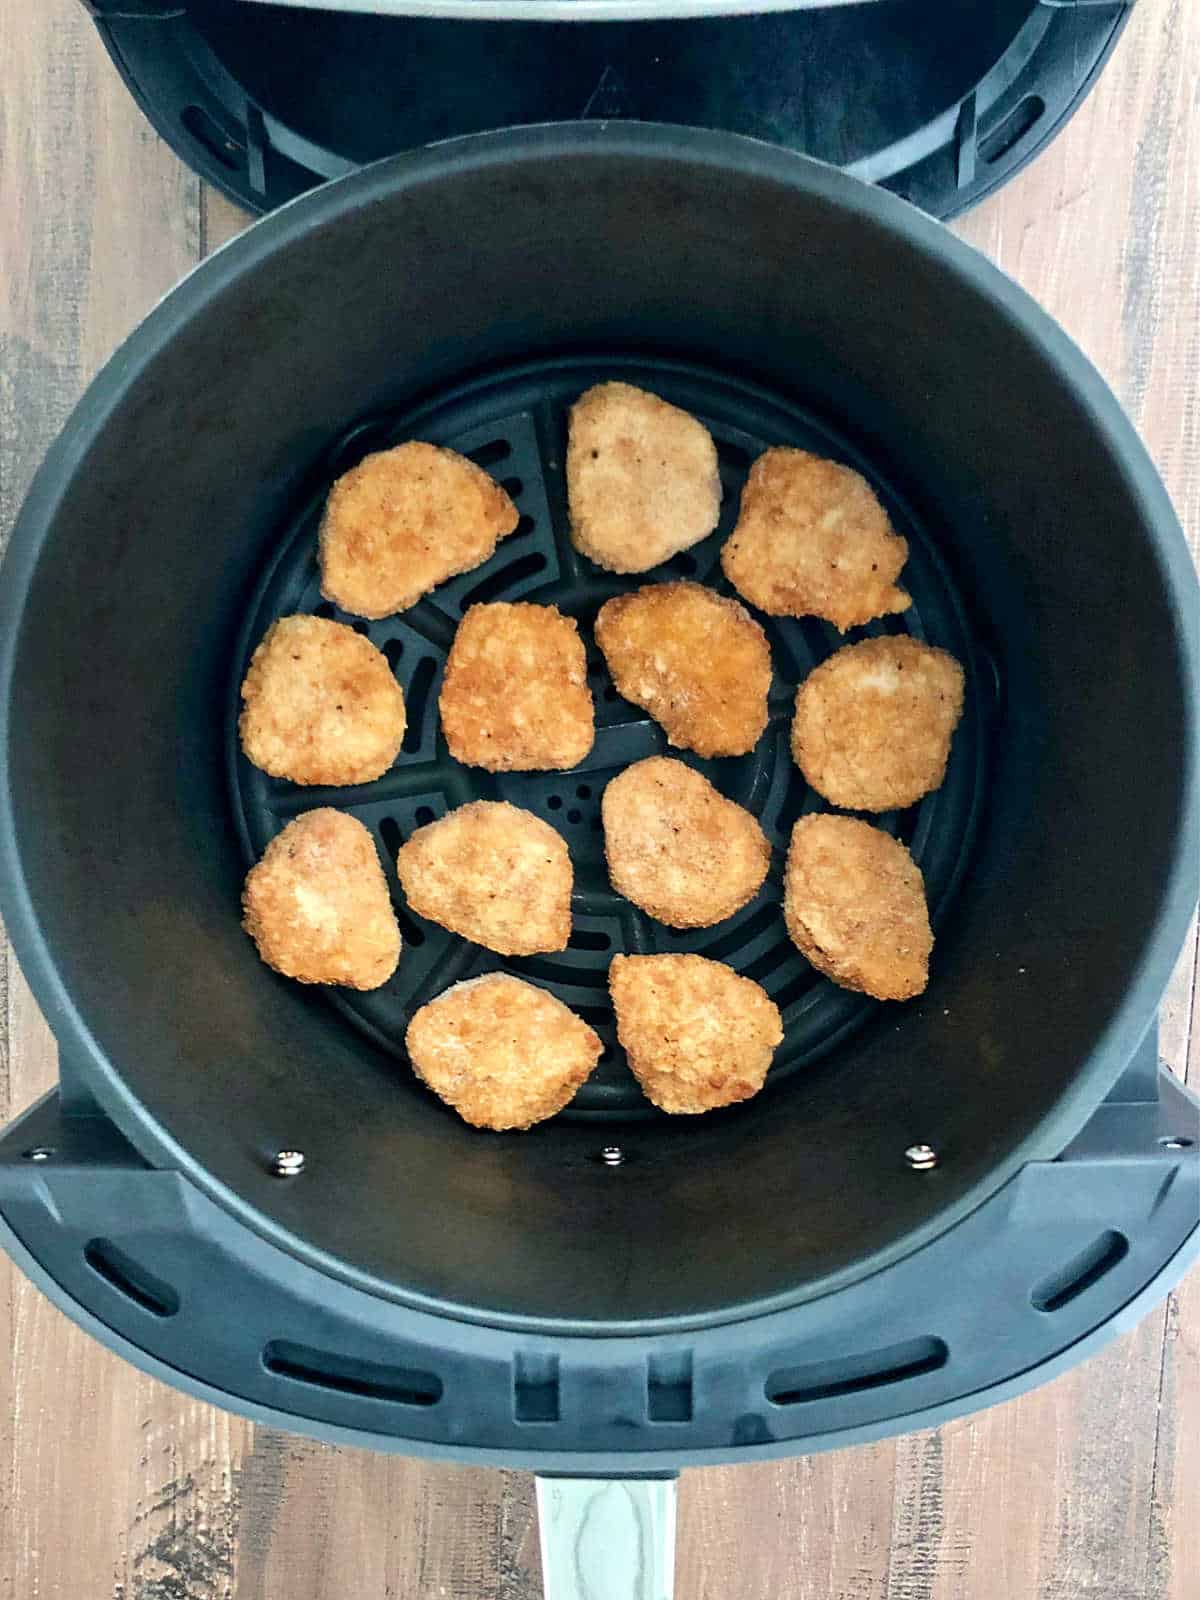 Chicken nuggets in air fryer basket.